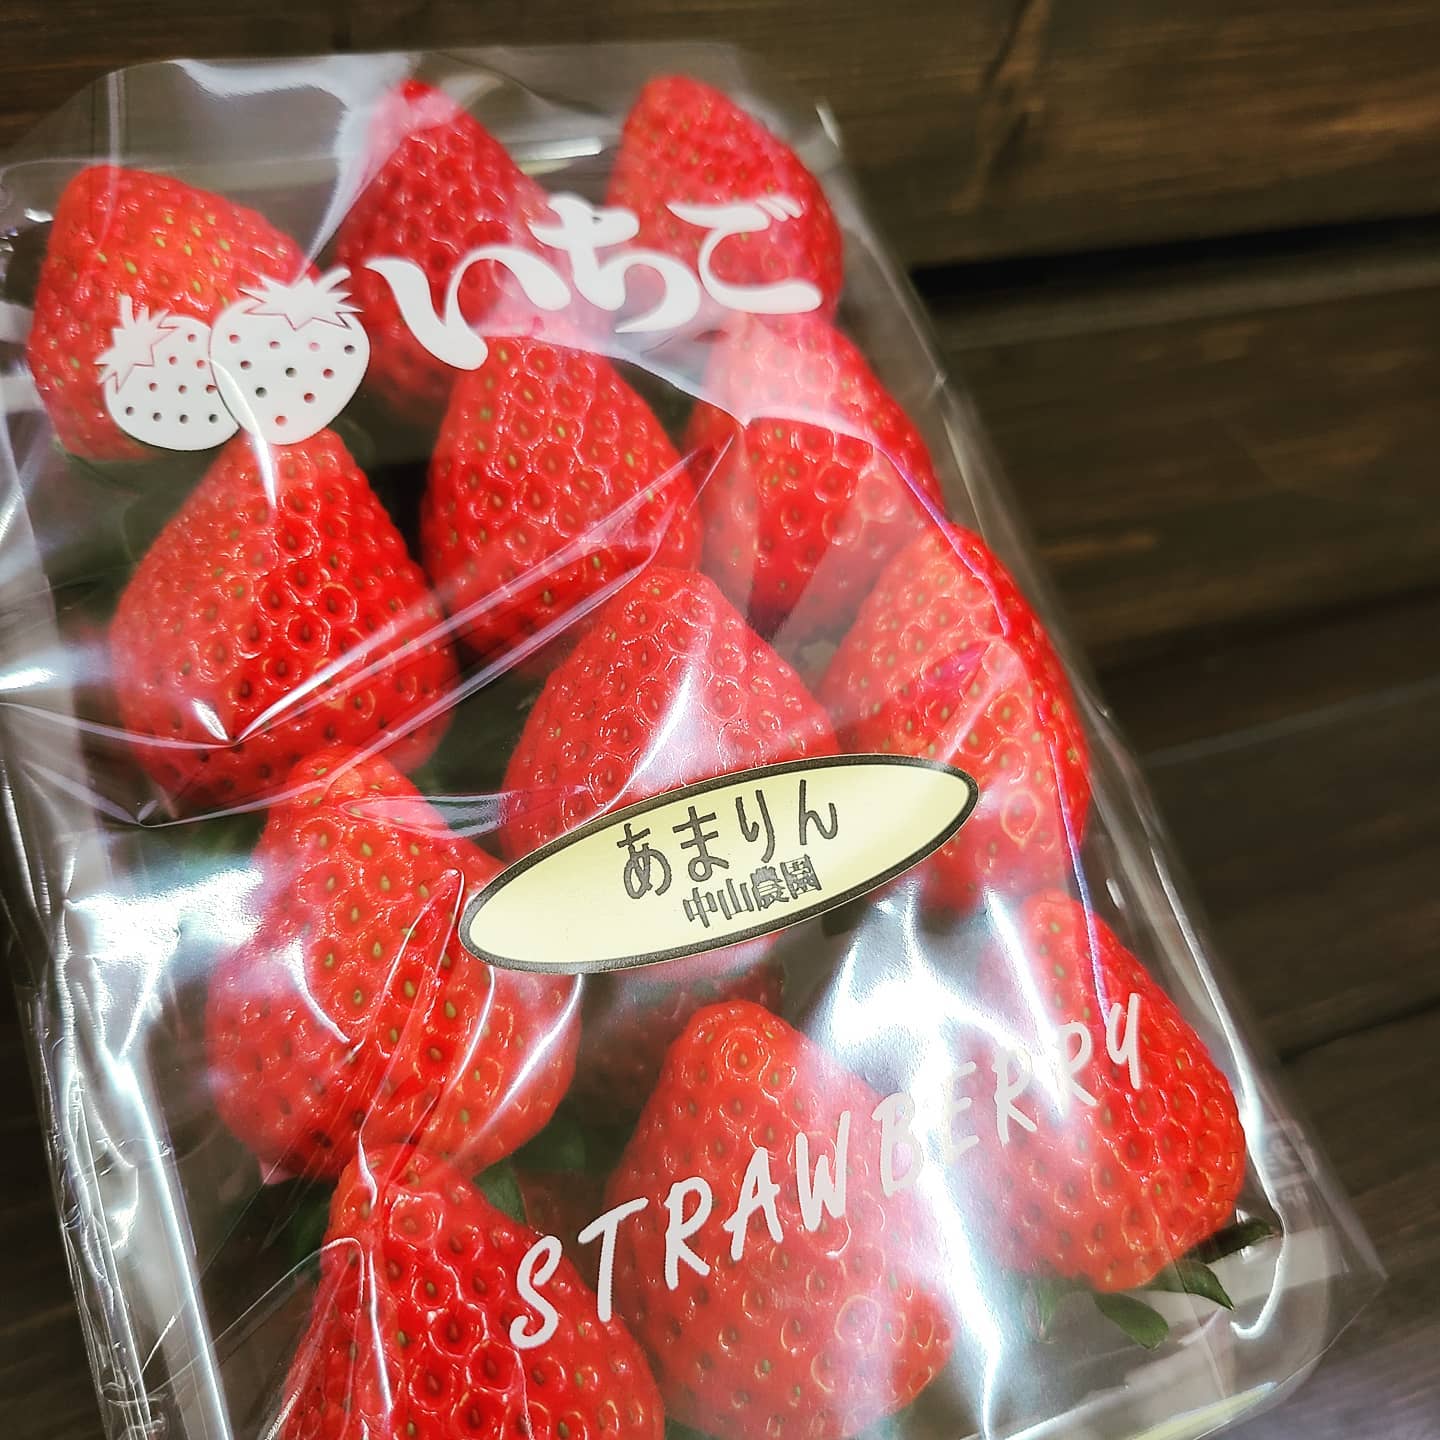 ◎初入荷情報️

高級いちごあまりん入荷しました

2016年に埼玉県で誕生した新品種でいちご好き大注目のいちごです!!
糖度が高く食味の良い品種です。酸度が控え目で、甘みを感じやすく、食べやすい品種となっています。
果実の色つやが良く、赤色が映える見た目の良さも特徴的です。

ご自身のご褒美または贈答にいかがですか？